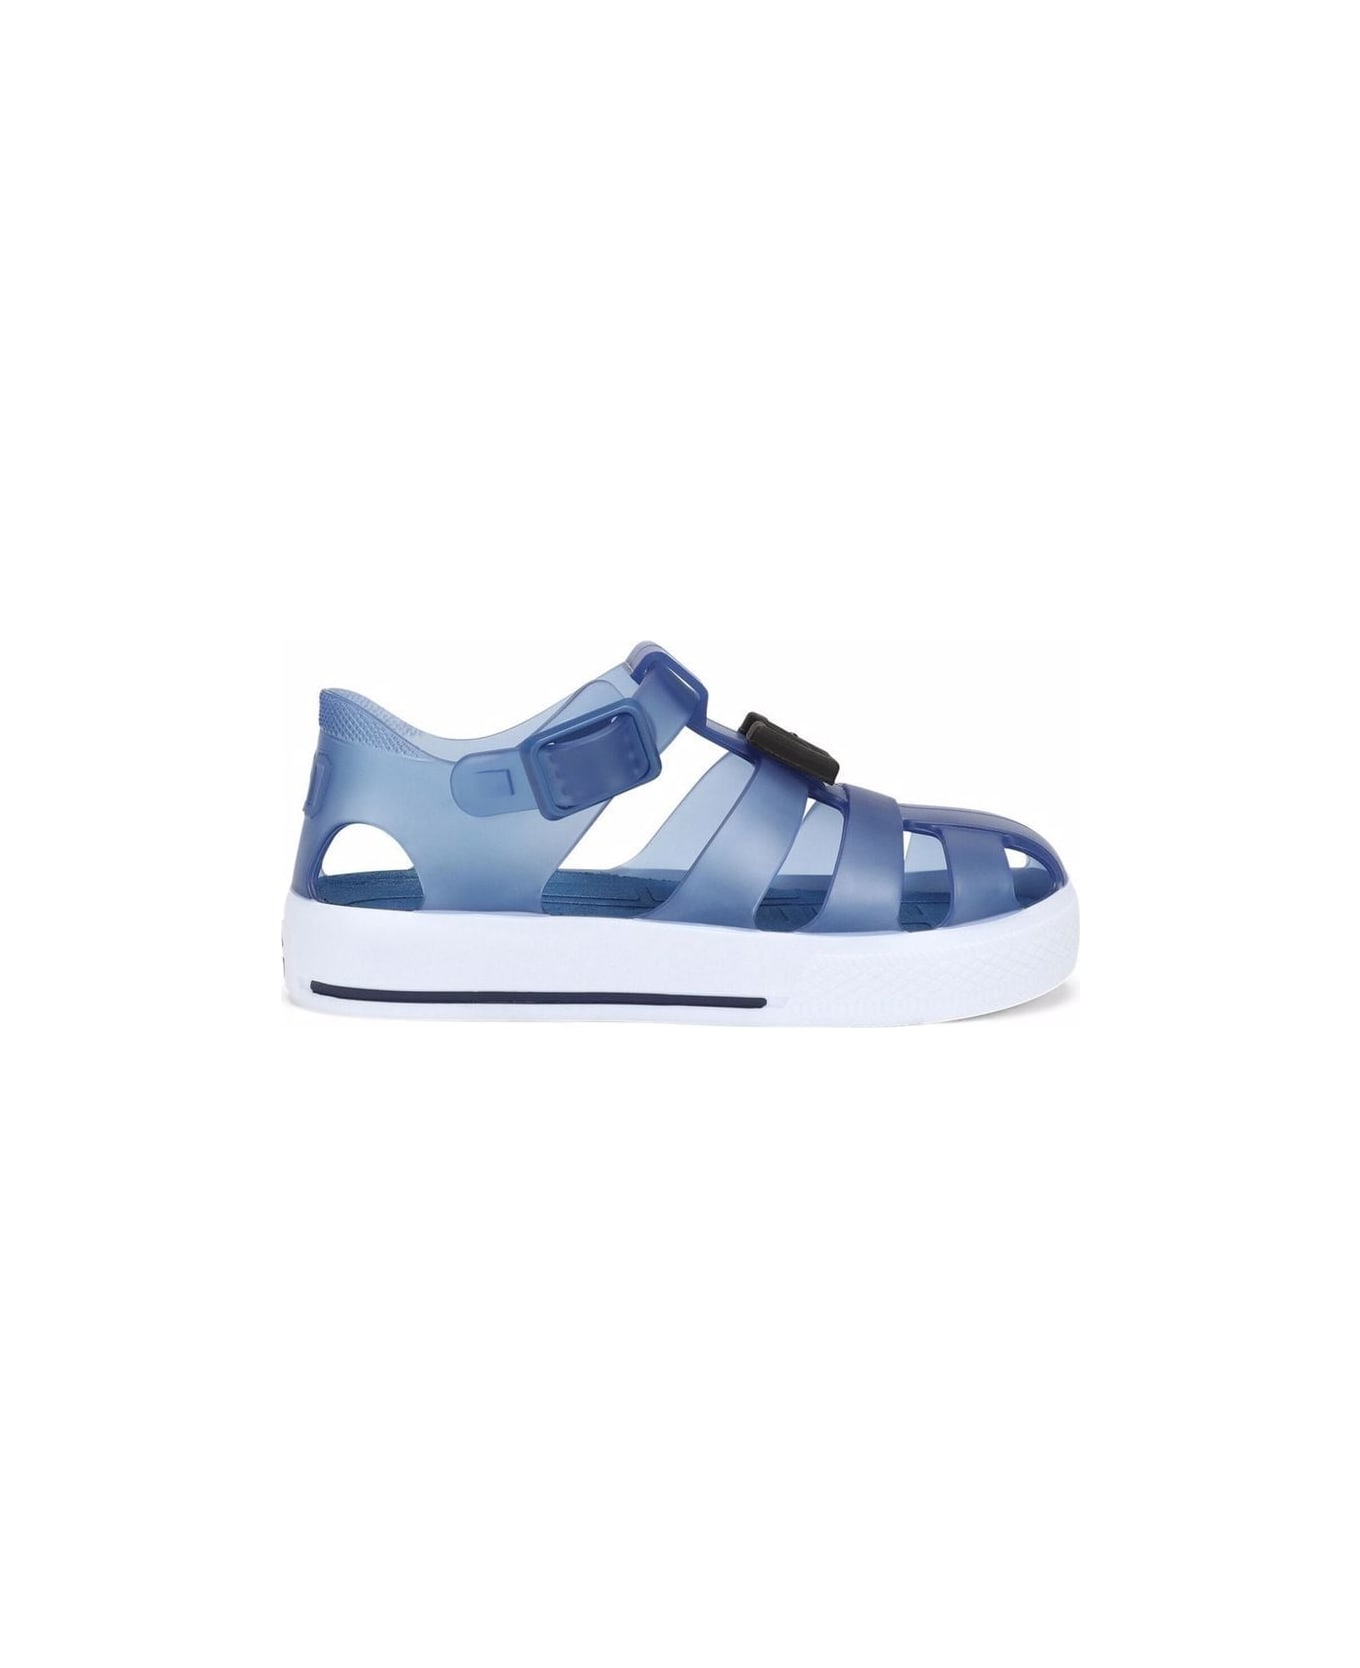 Dolce & Gabbana Blue Rubber Sandals - Blue